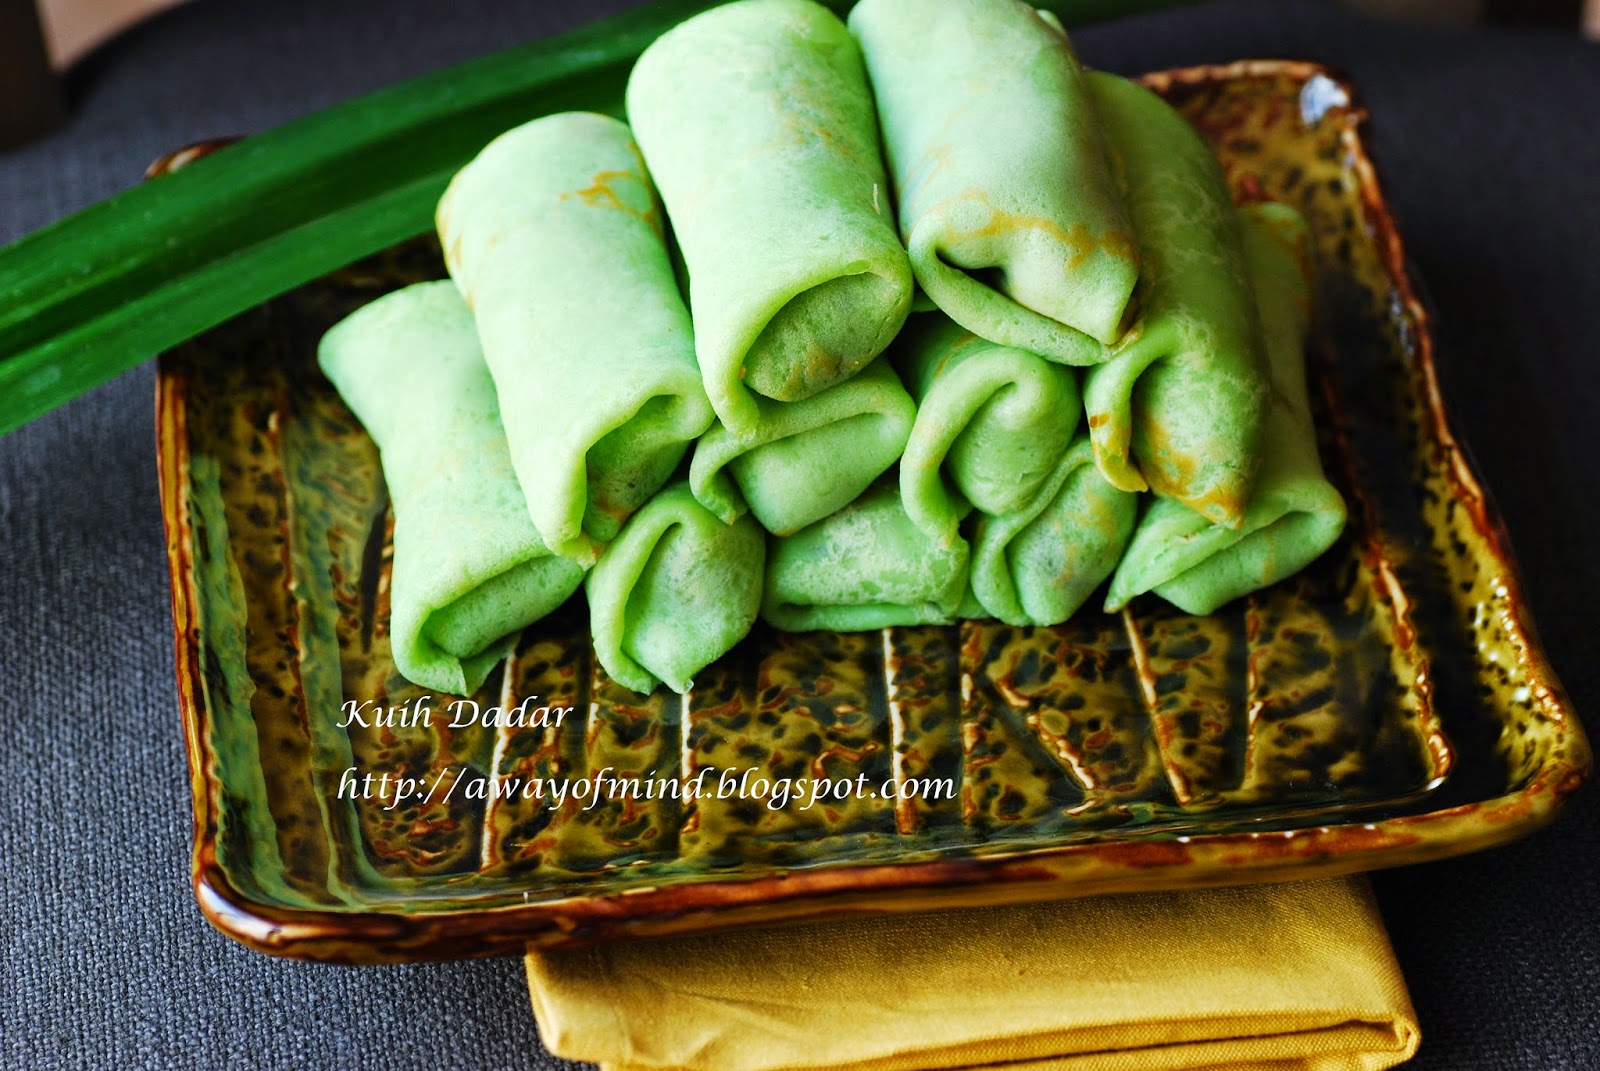 Awayofmind Bakery House: Kuih Dadar / Kuih Ketayap (Sweet 